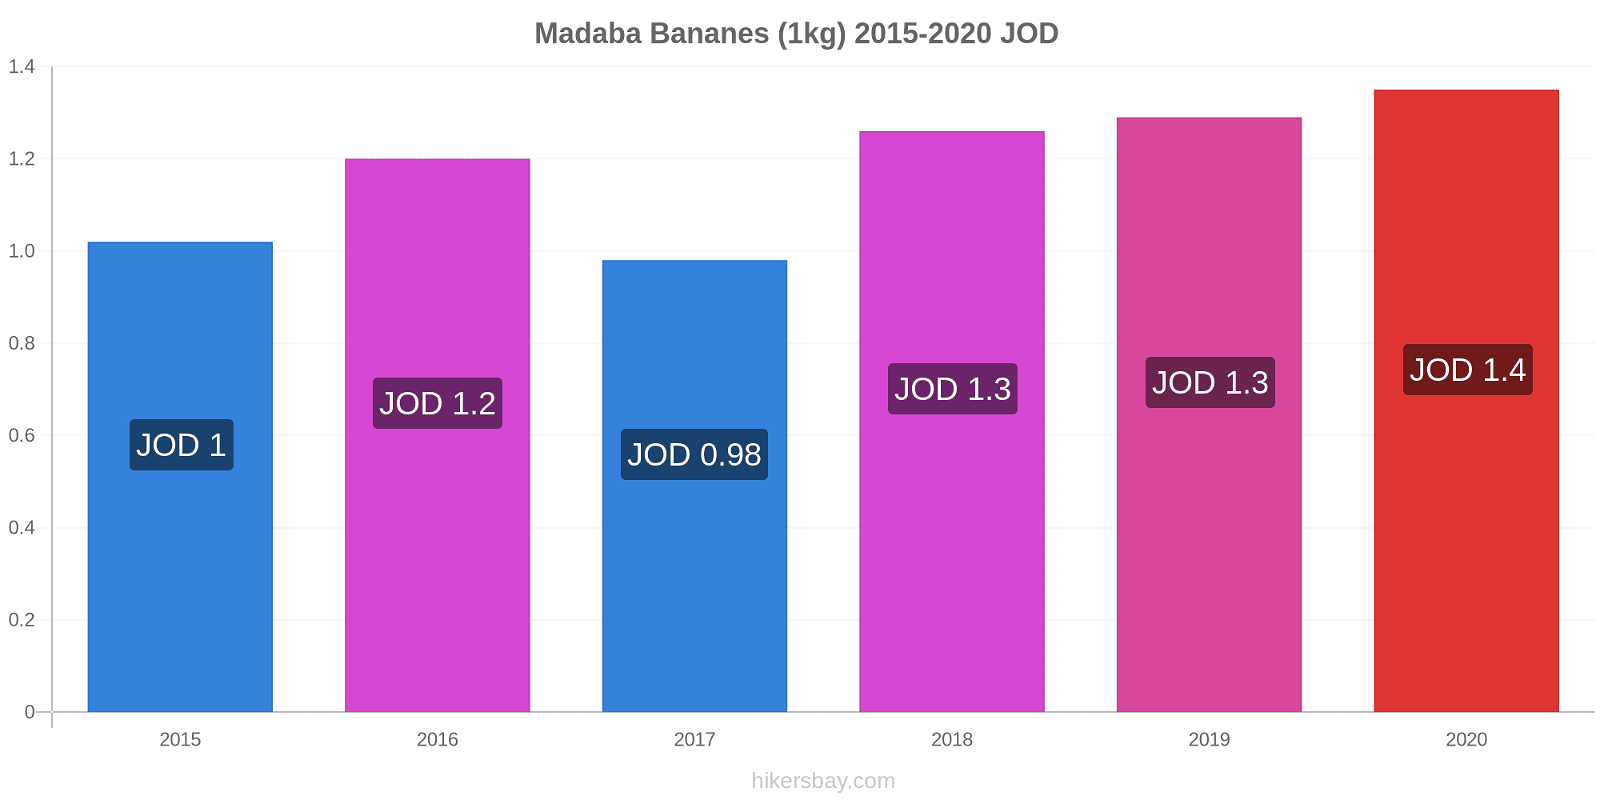 Madaba changements de prix Bananes (1kg) hikersbay.com